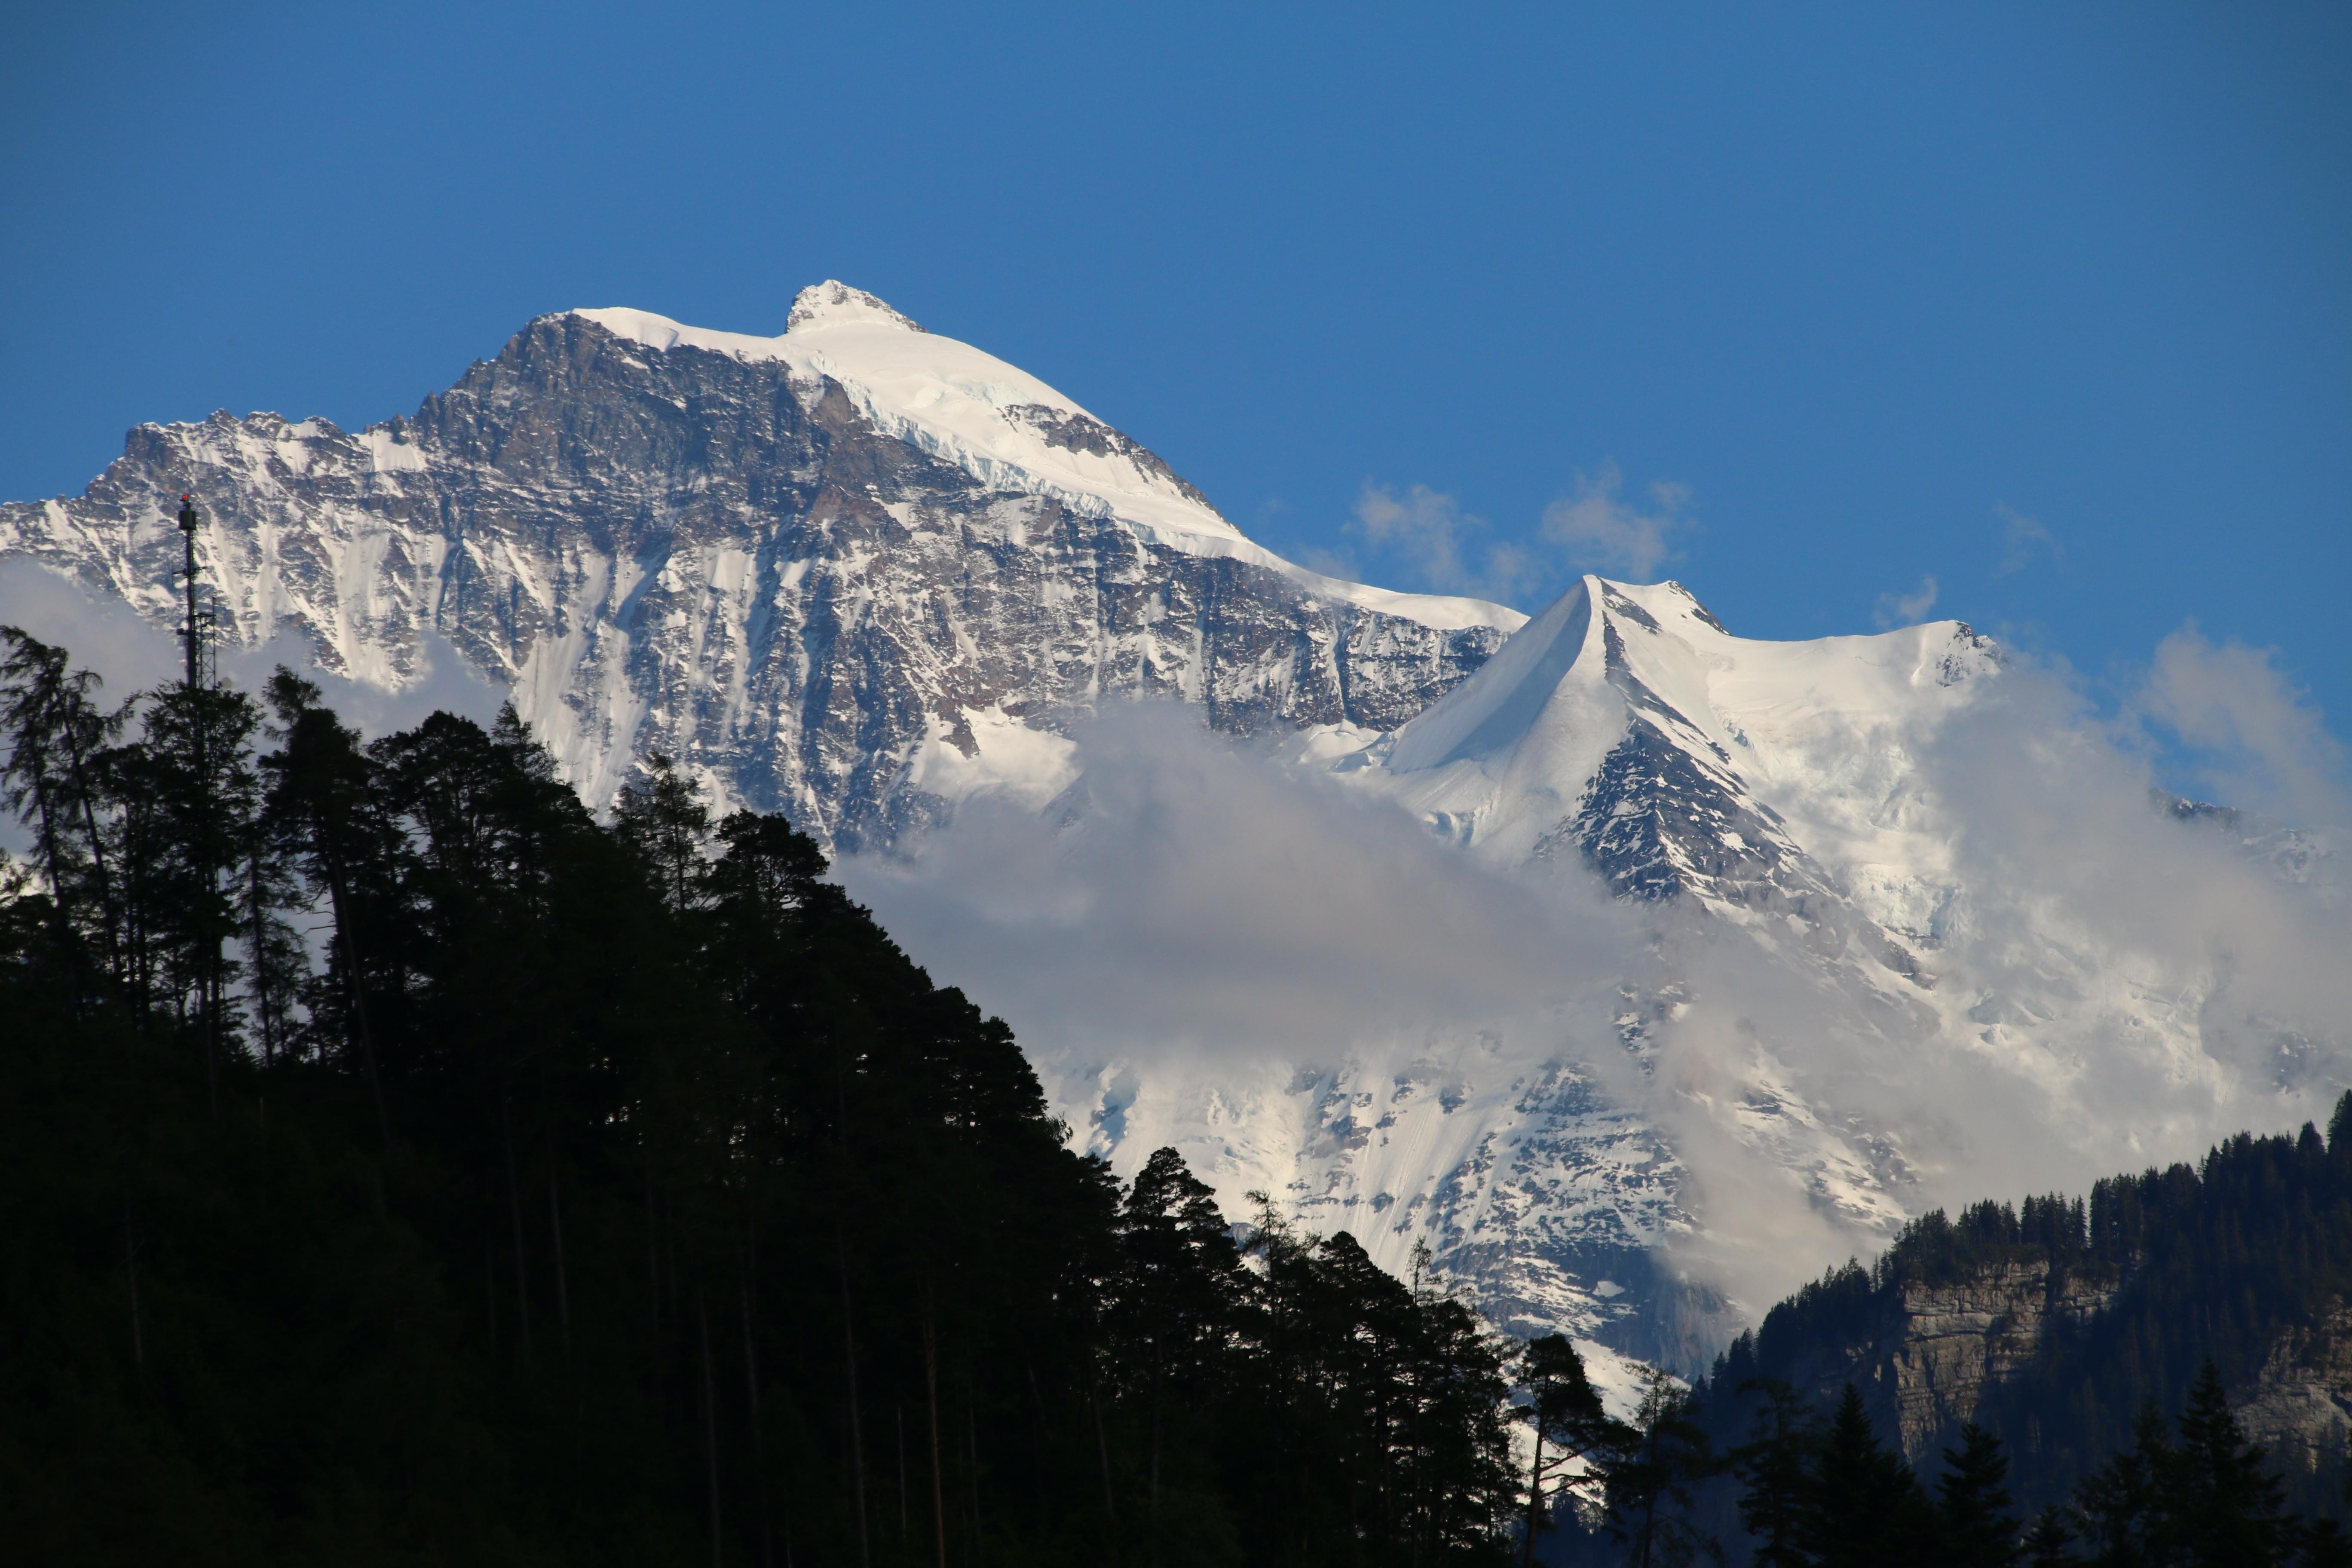 Traumausblick aus dem Hotel auf die Jungfrau 
#schweiz #bergliebe #jungfraujoch 